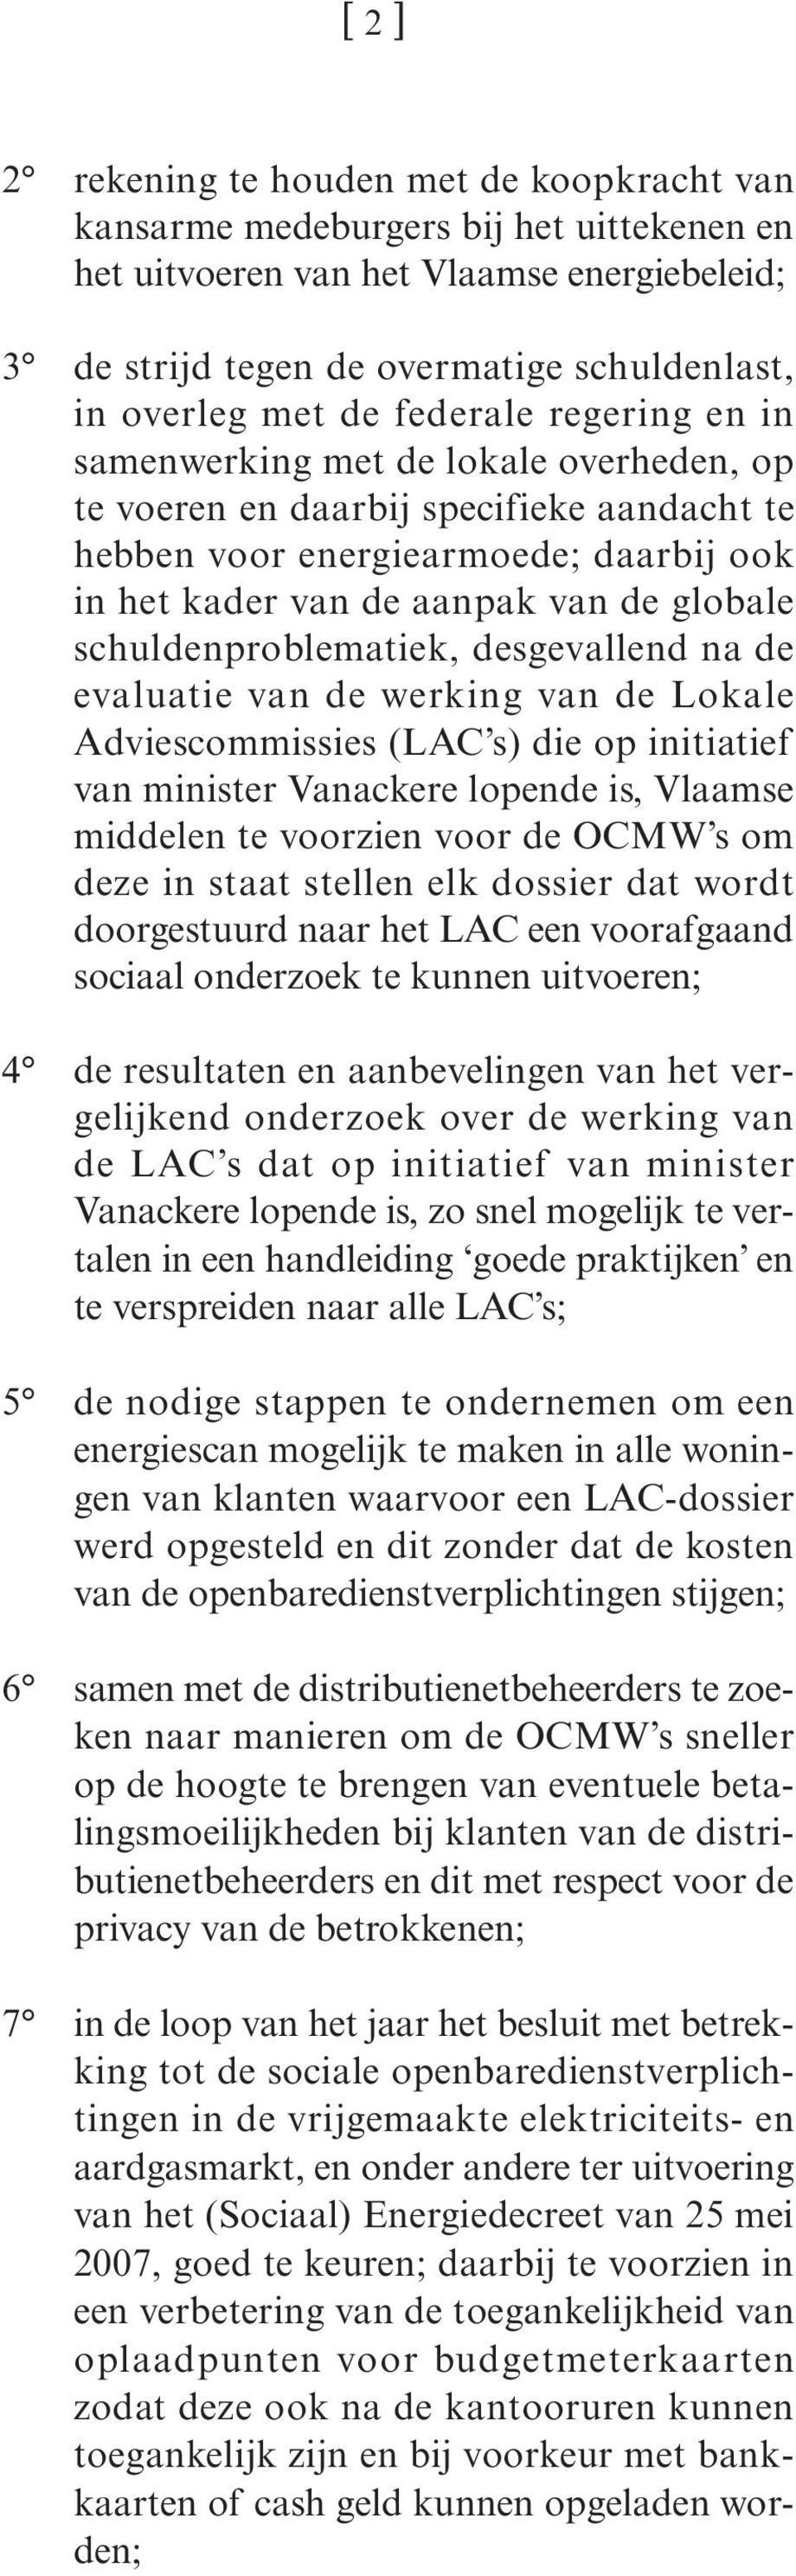 schuldenproblematiek, desgevallend na de evaluatie van de werking van de Lokale Adviescommissies (LAC s) die op initiatief van minister Vanackere lopende is, Vlaamse middelen te voorzien voor de OCMW